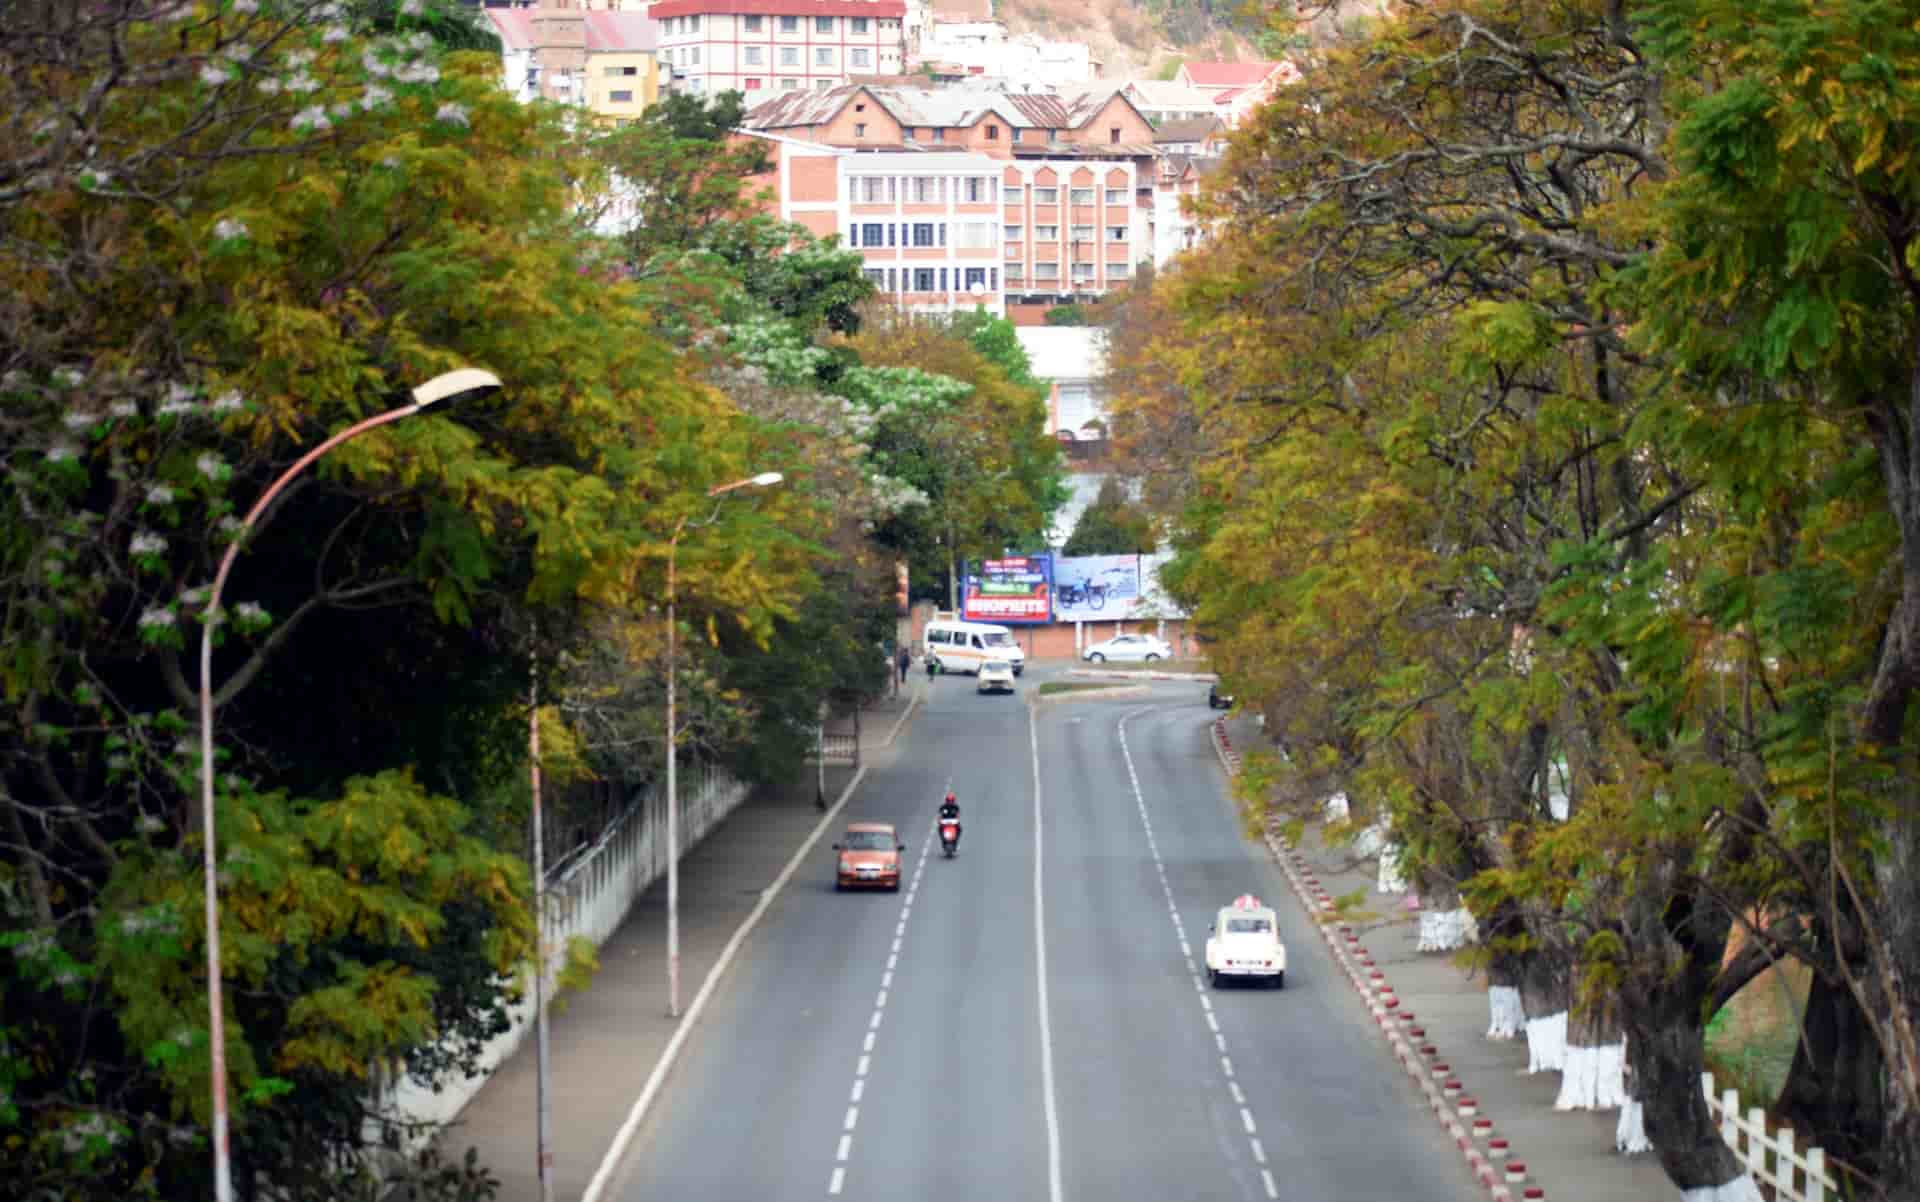 Comment faire pour trouver un hôtel et hébergement à Antananarivo ?